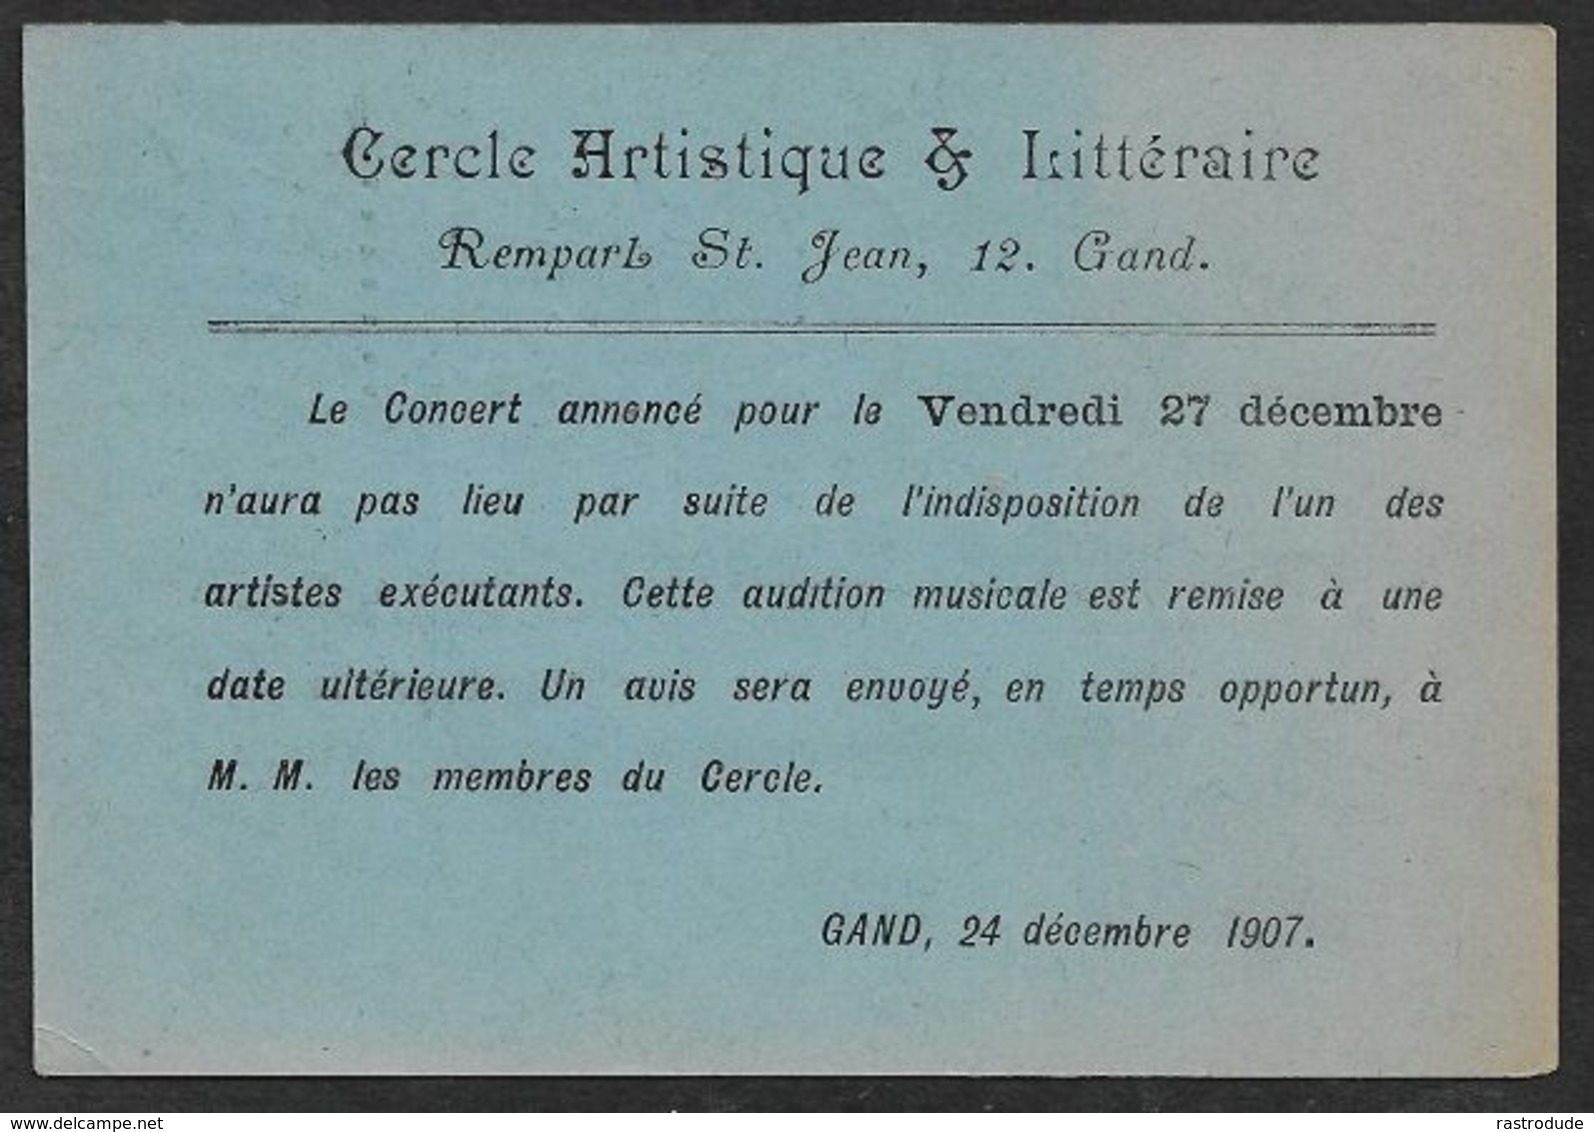 1907 BELGIQUE - 1C  - IMPRIMÉ CERCLE ARTISTIQUE & LITTÉRAIRE -  ANNULATION D'UN CONCERT - INDISPOSITION DE UN  ARTISTE - Rollenmarken 1900-09